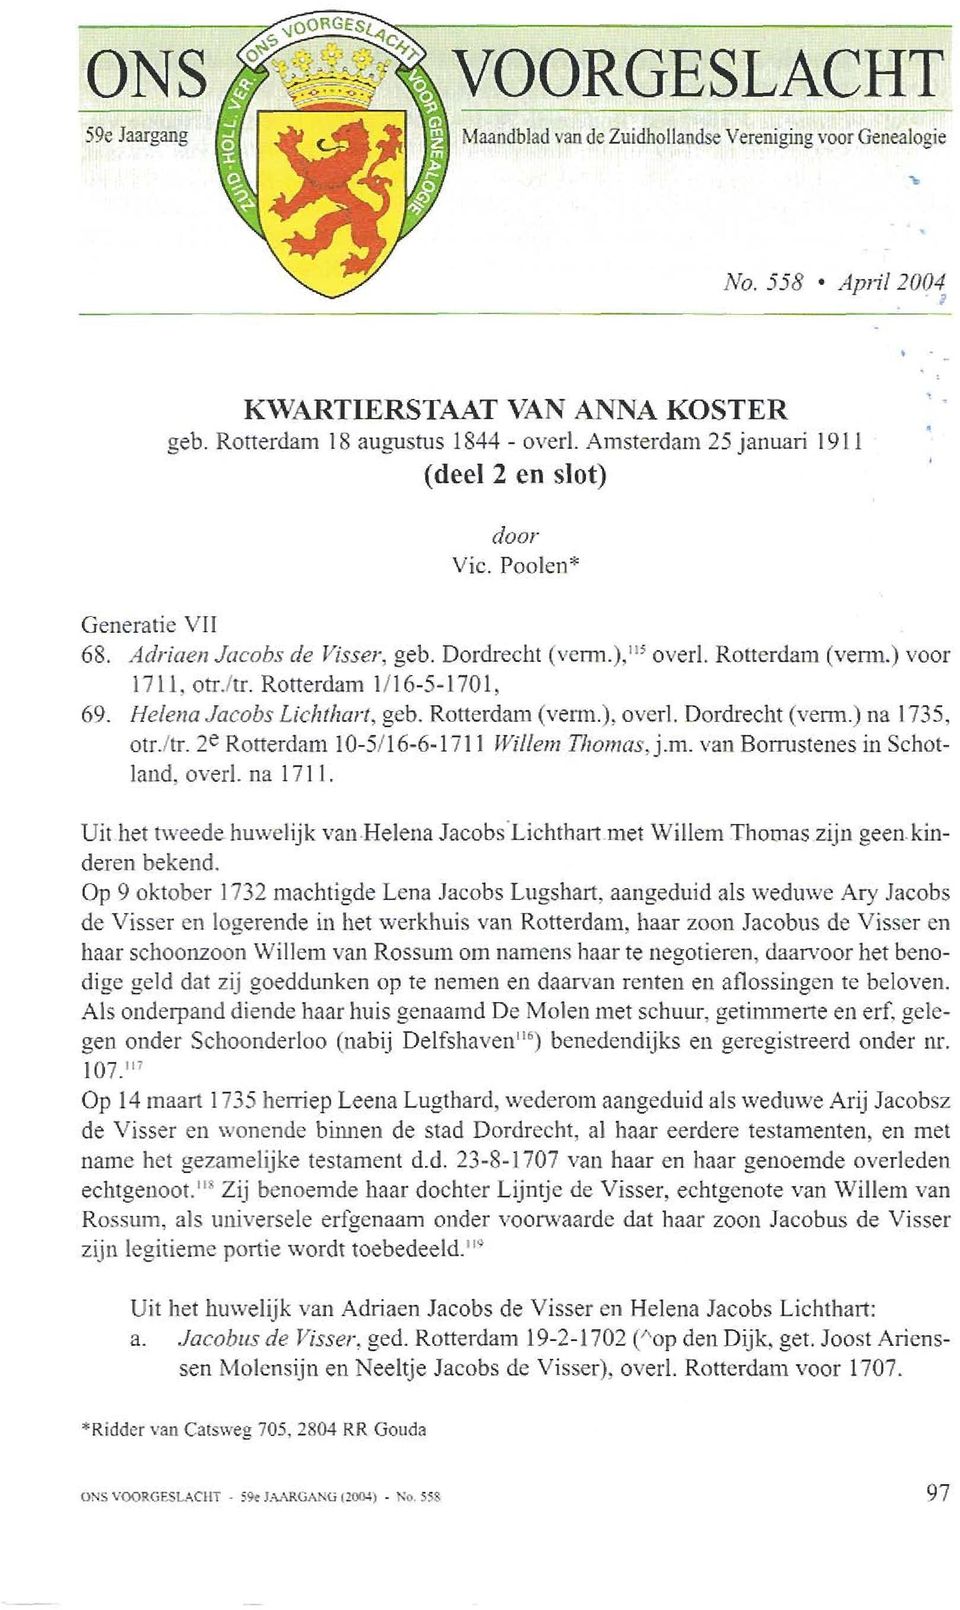 2e Rotterdam 10-5116-6-1711 Willem Tliomas, j.m. van Bomstenes in Schotland, overl. na 1711. Uit het tweede huwelijk van-helena Jacobs'Lichthart met Willem Thornaszijn geenkinderen bekend.